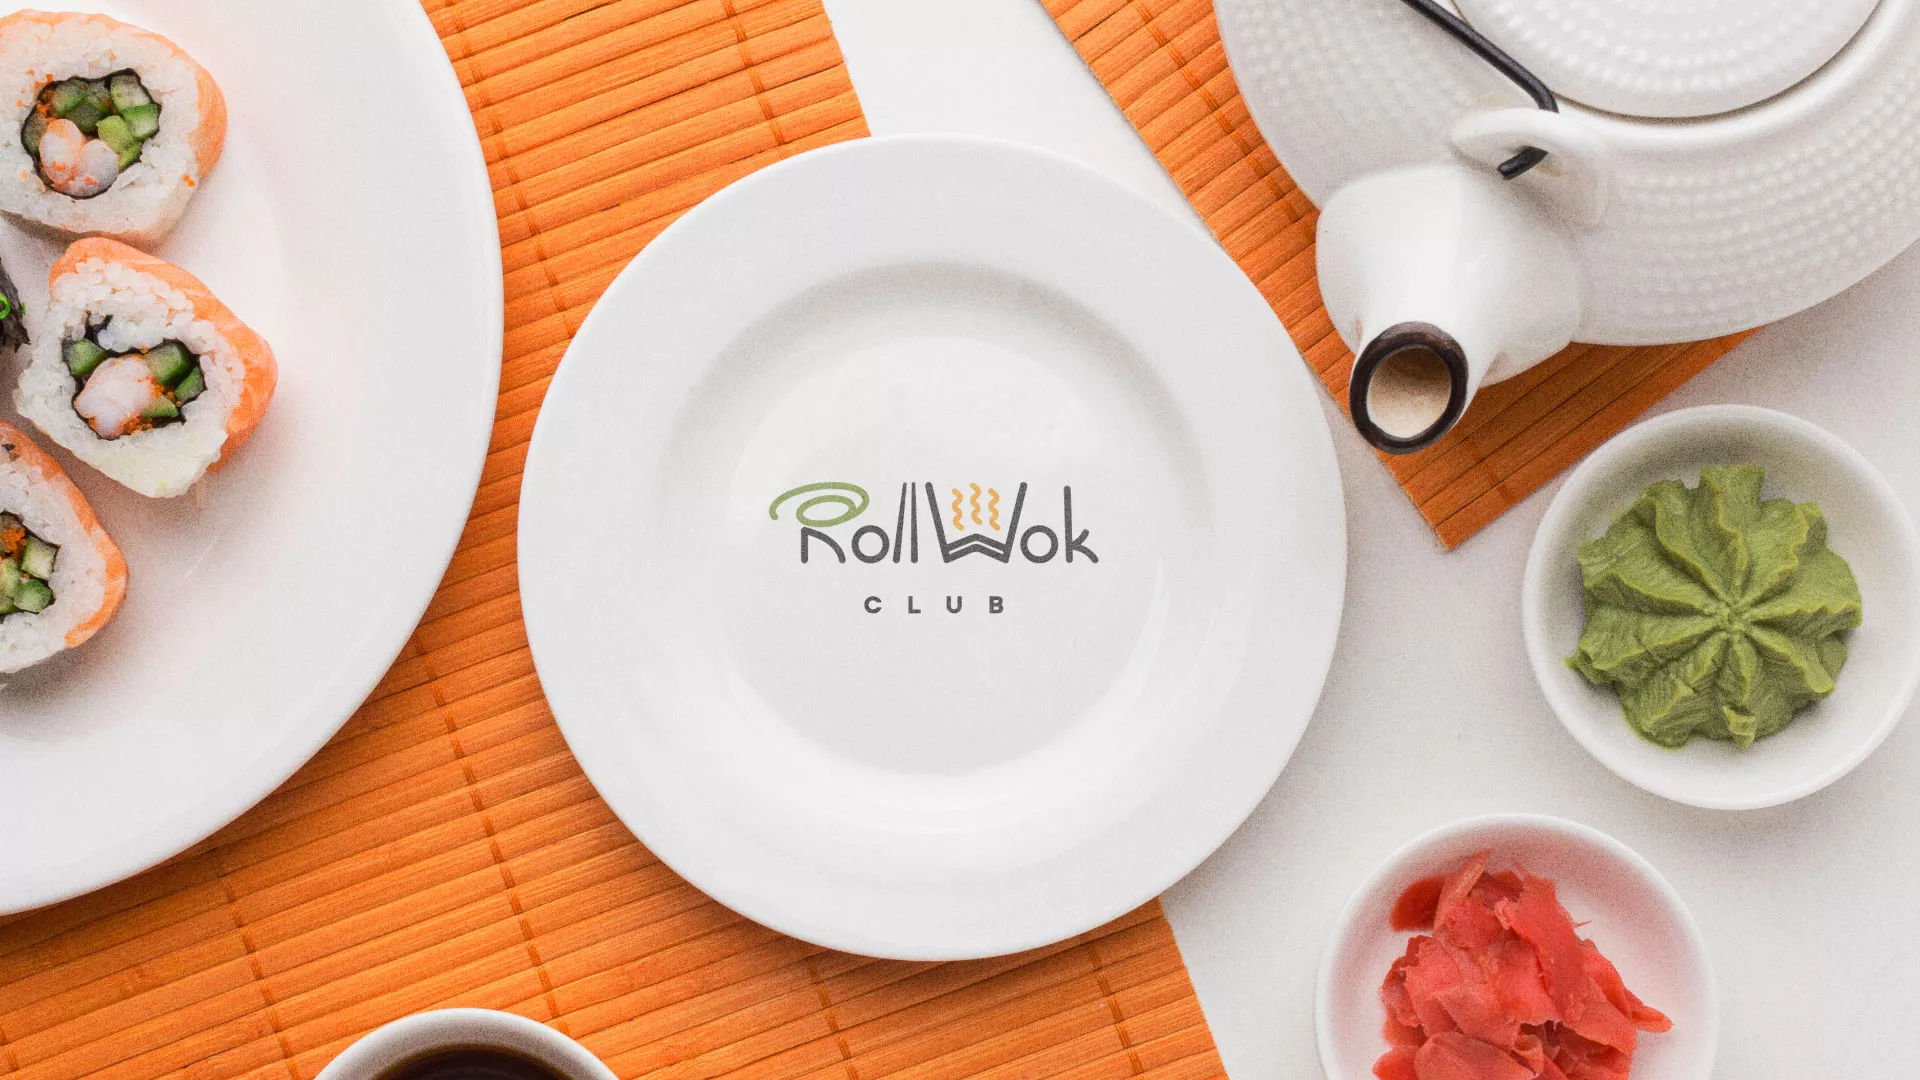 Разработка логотипа и фирменного стиля суши-бара «Roll Wok Club» в Вихоревке